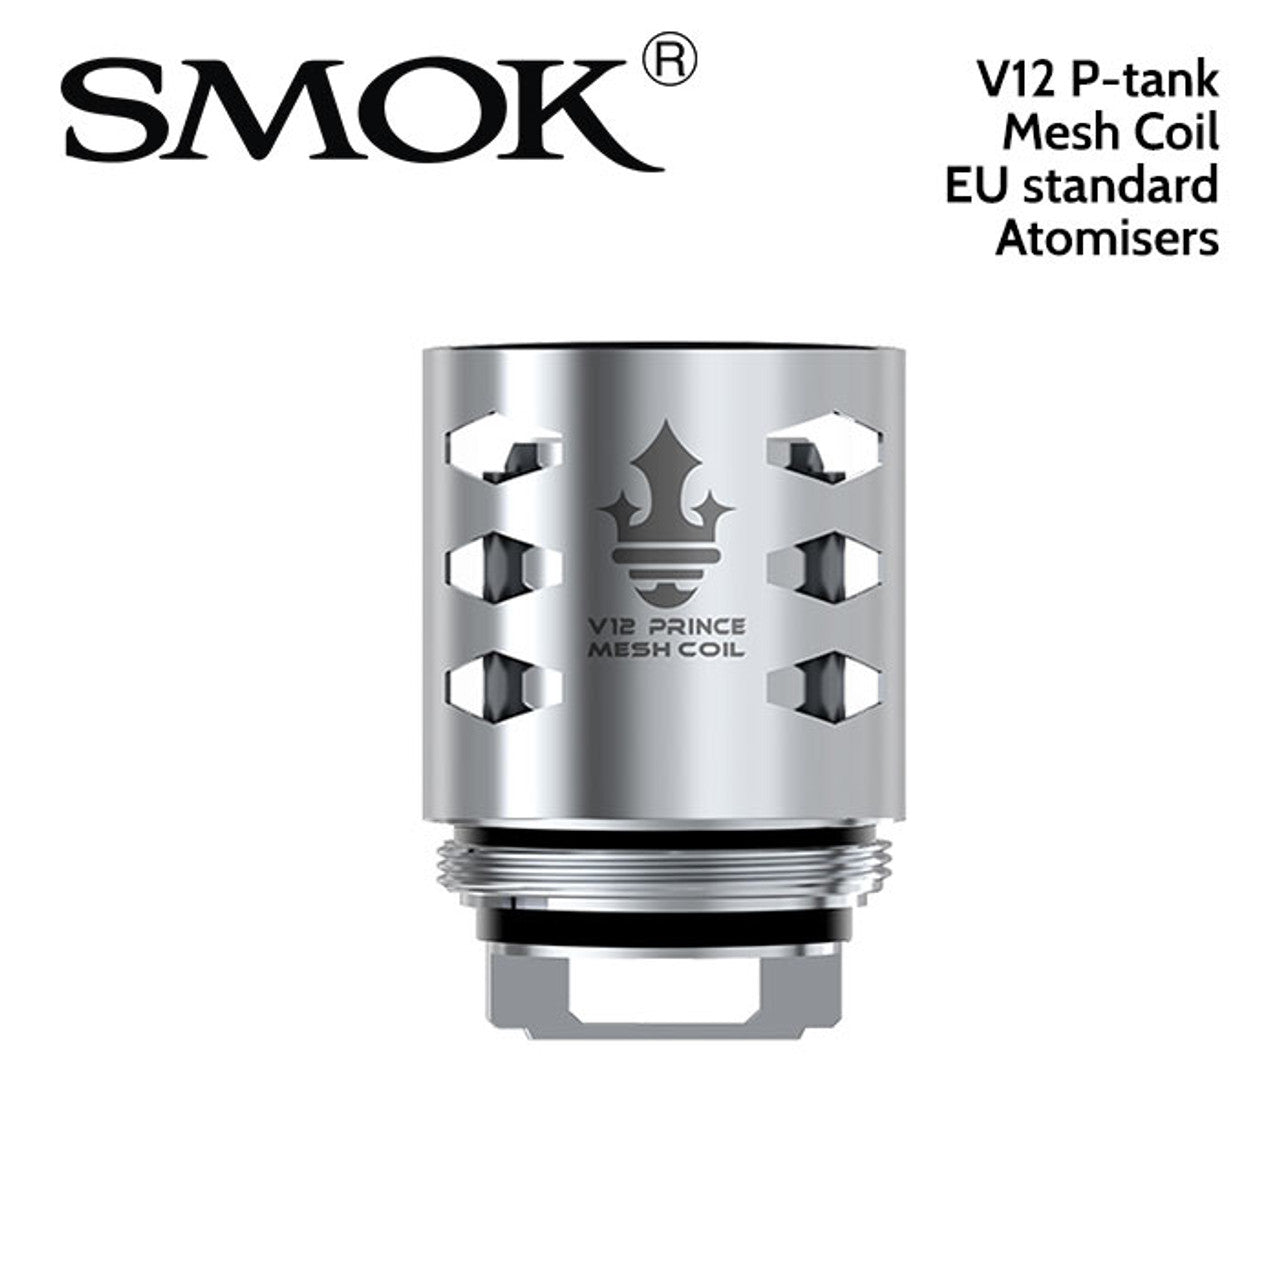 SMOK V12 P-TANK MESH COIL 0.15 ohm